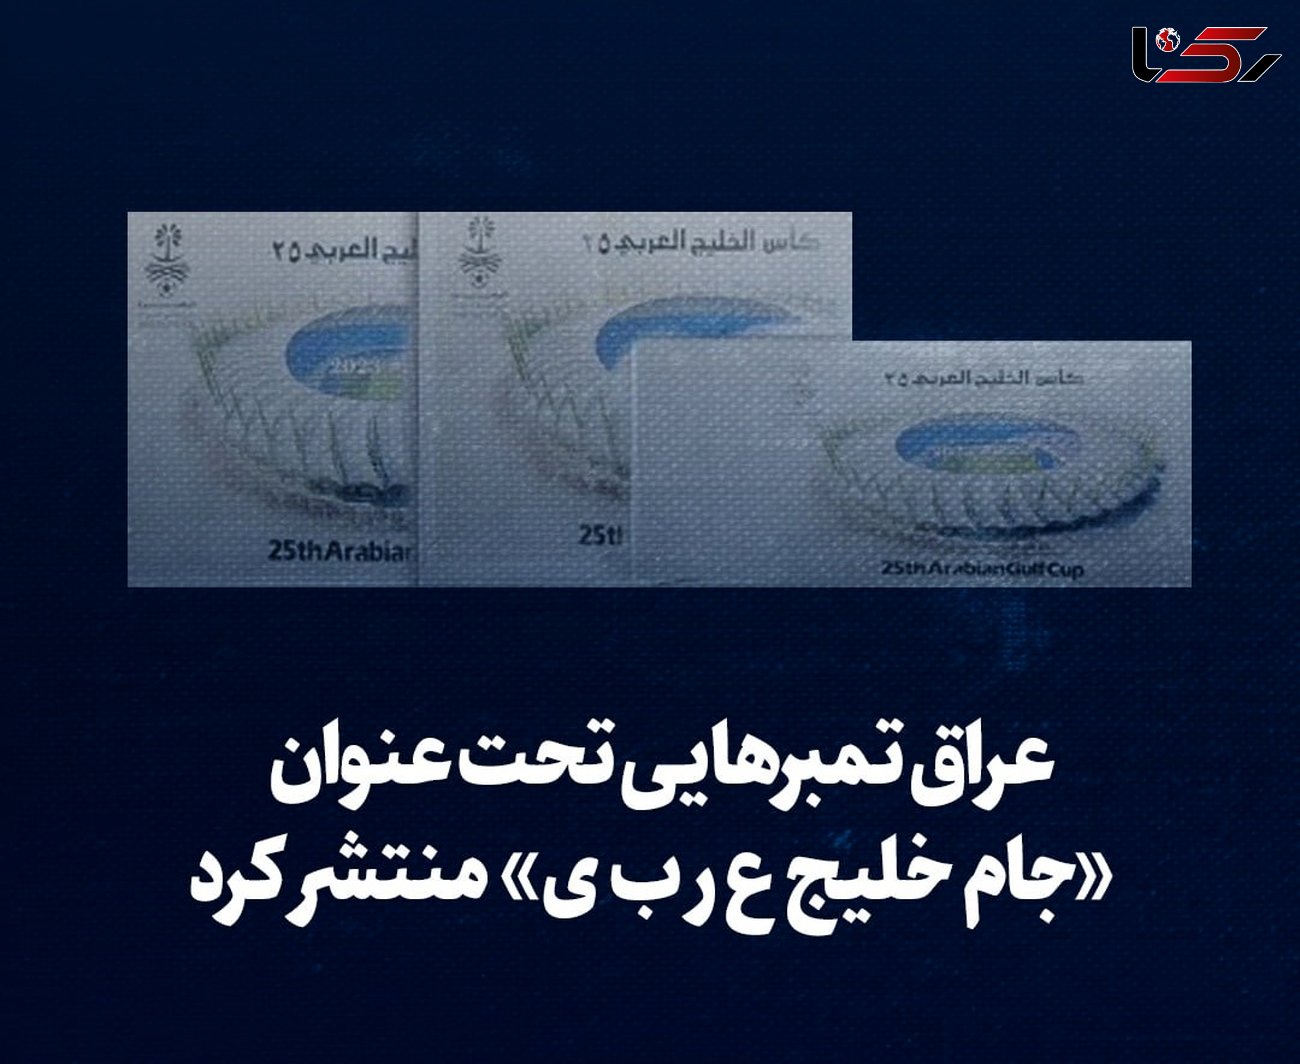 حرکت گستاخانه عراق / انتشار تمبرهایی با تغییر نام خلیج فارس